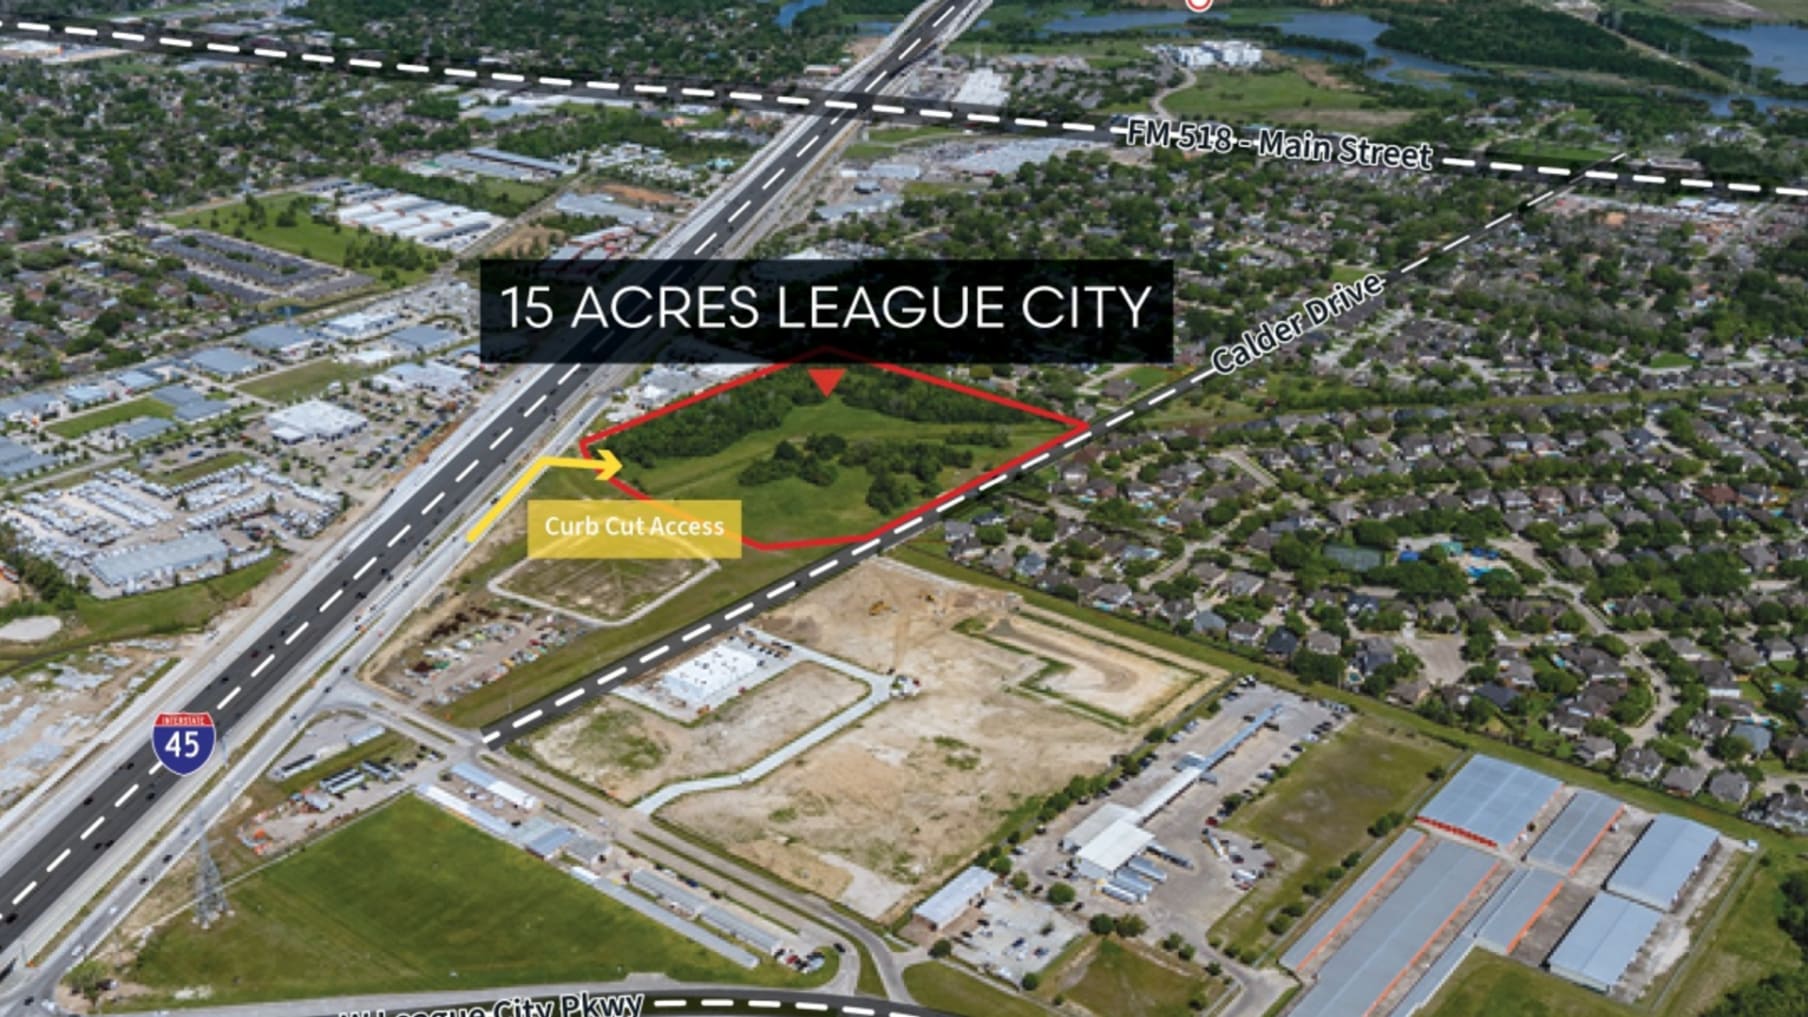 15.27 Acres on Calder Drive - League City, TX_Property for Sale